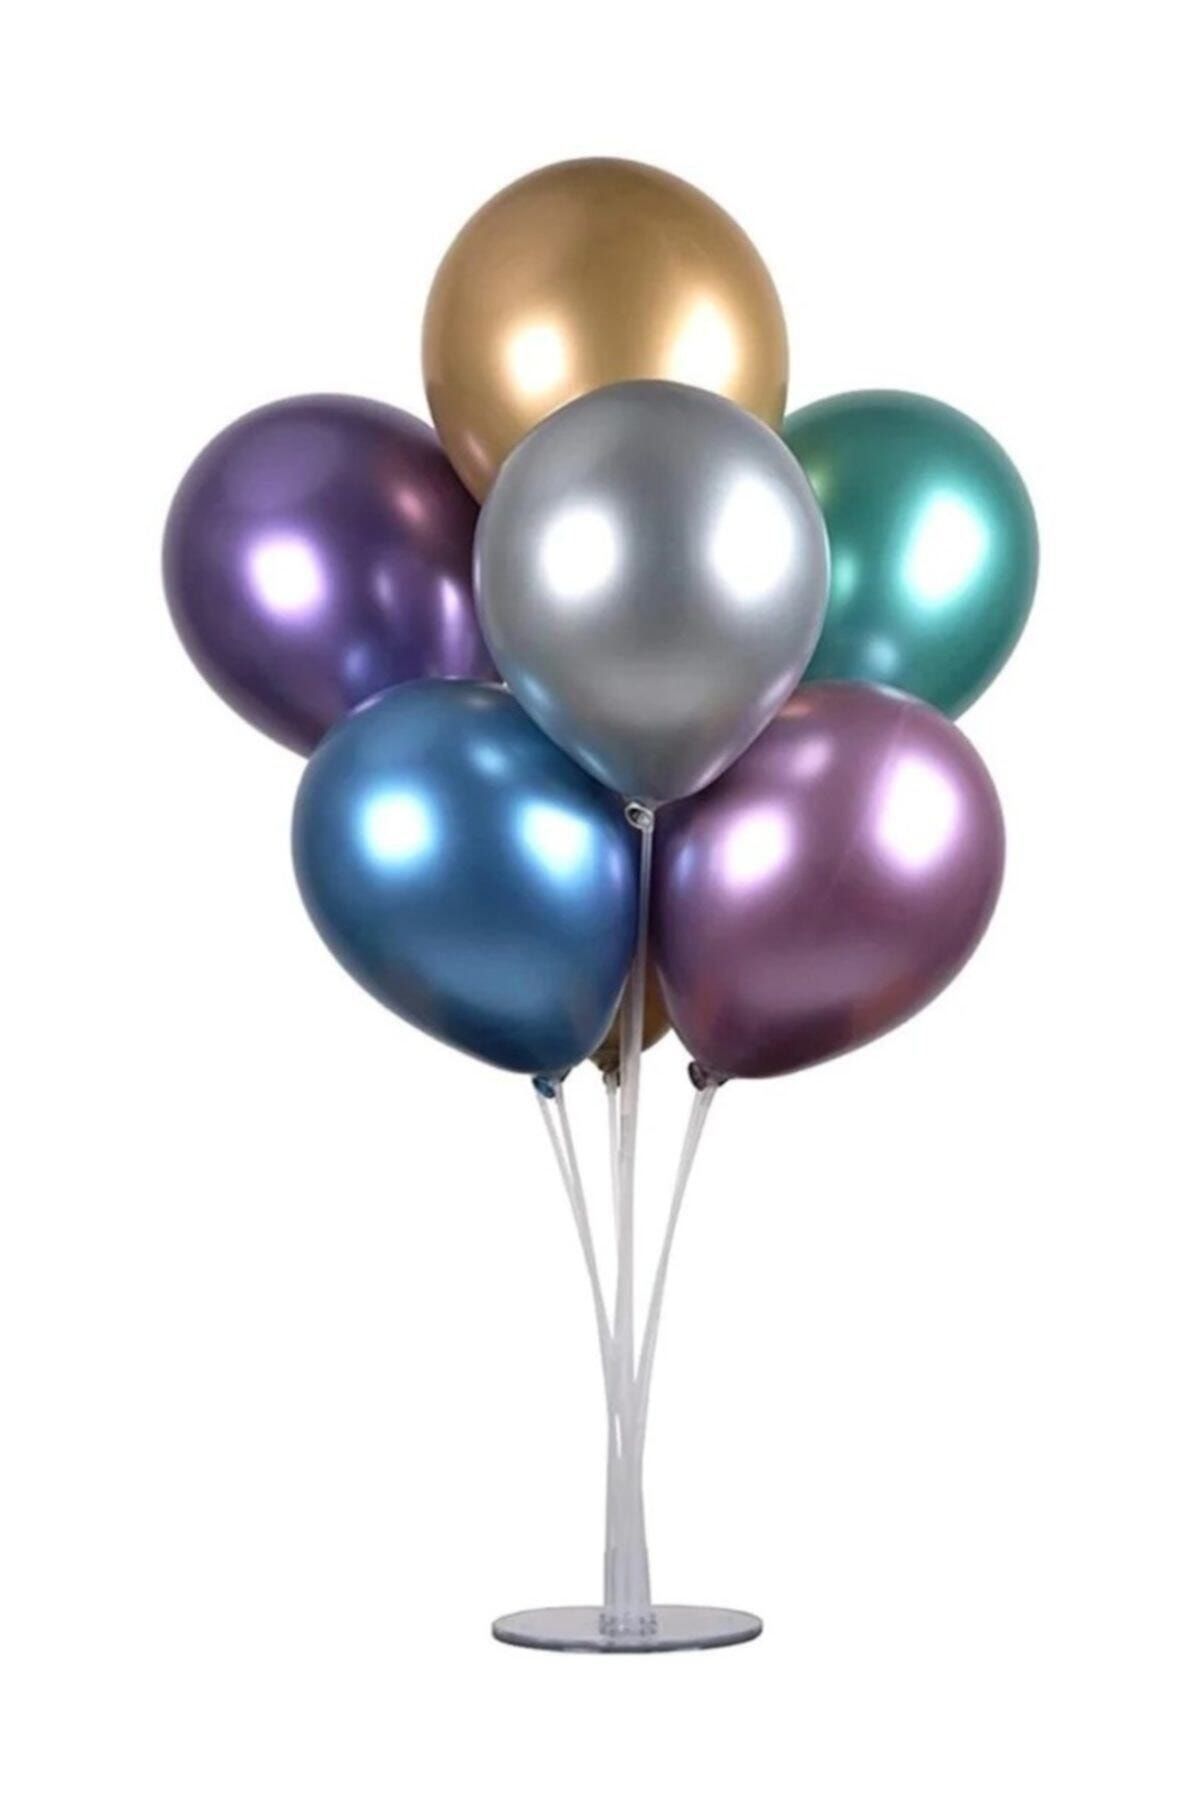 Genel Markalar 7'li Balon Standı Ve 7 Adet Metalik Balon